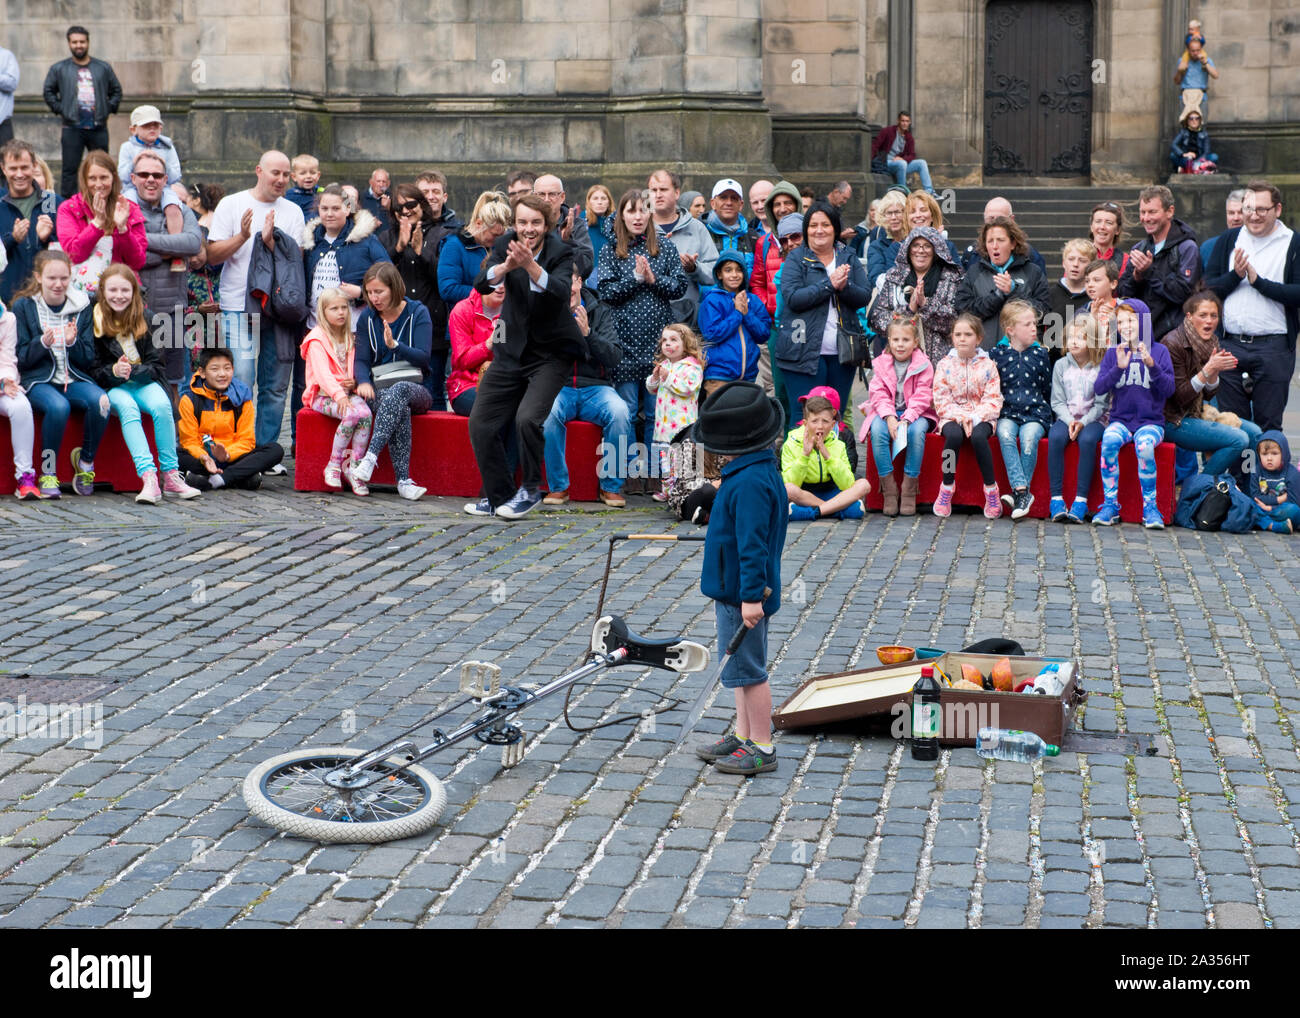 Jeune garçon de profiter de l'auditoire participant à la loi de la rue. Edinburgh Fringe Festival Banque D'Images